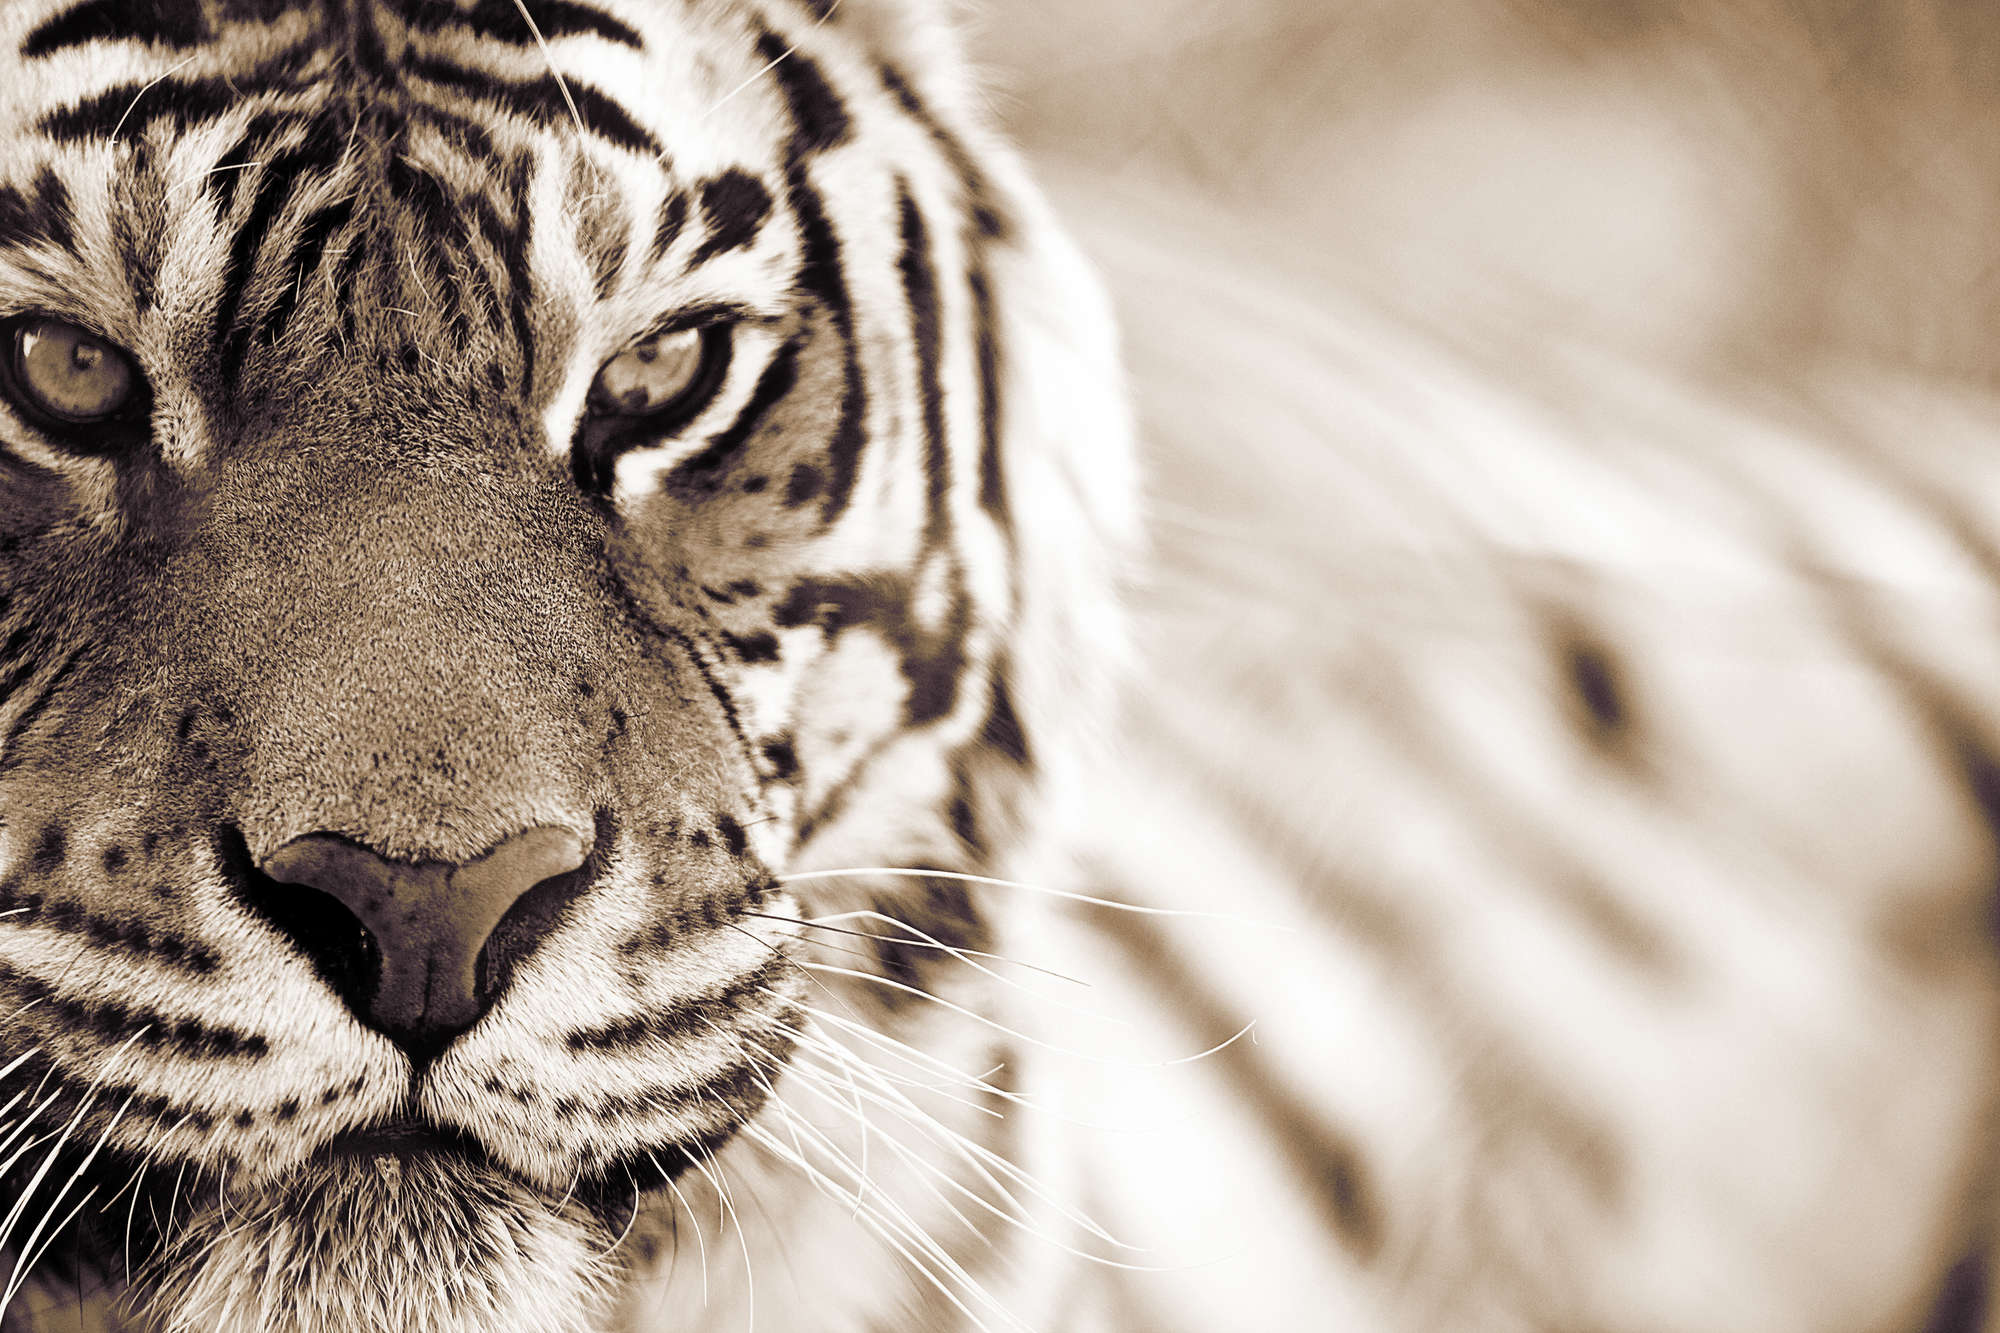             Carta da parati Tiger Outdoor Close-up su tessuto non tessuto liscio opaco
        